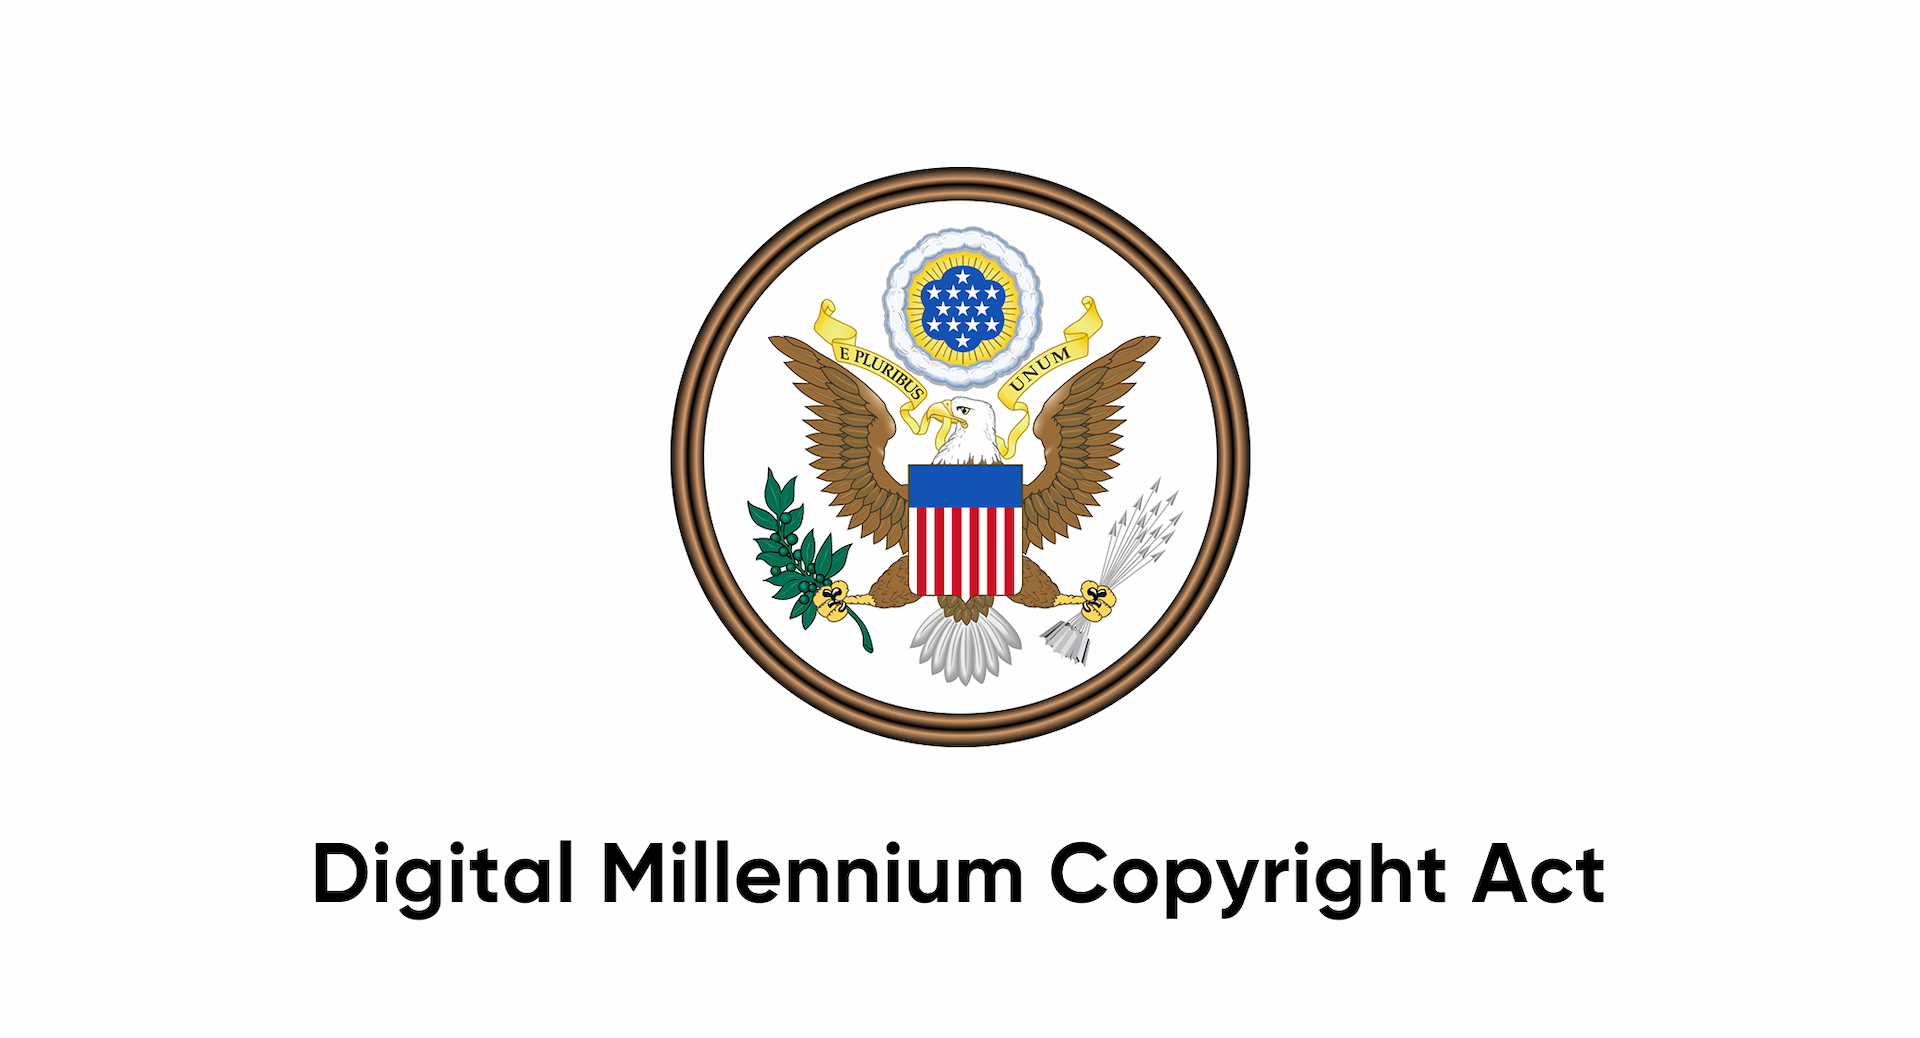 DMCA là gì? DMCA là từ viết tắt của cụm từ Digital Millennium Copyright Act